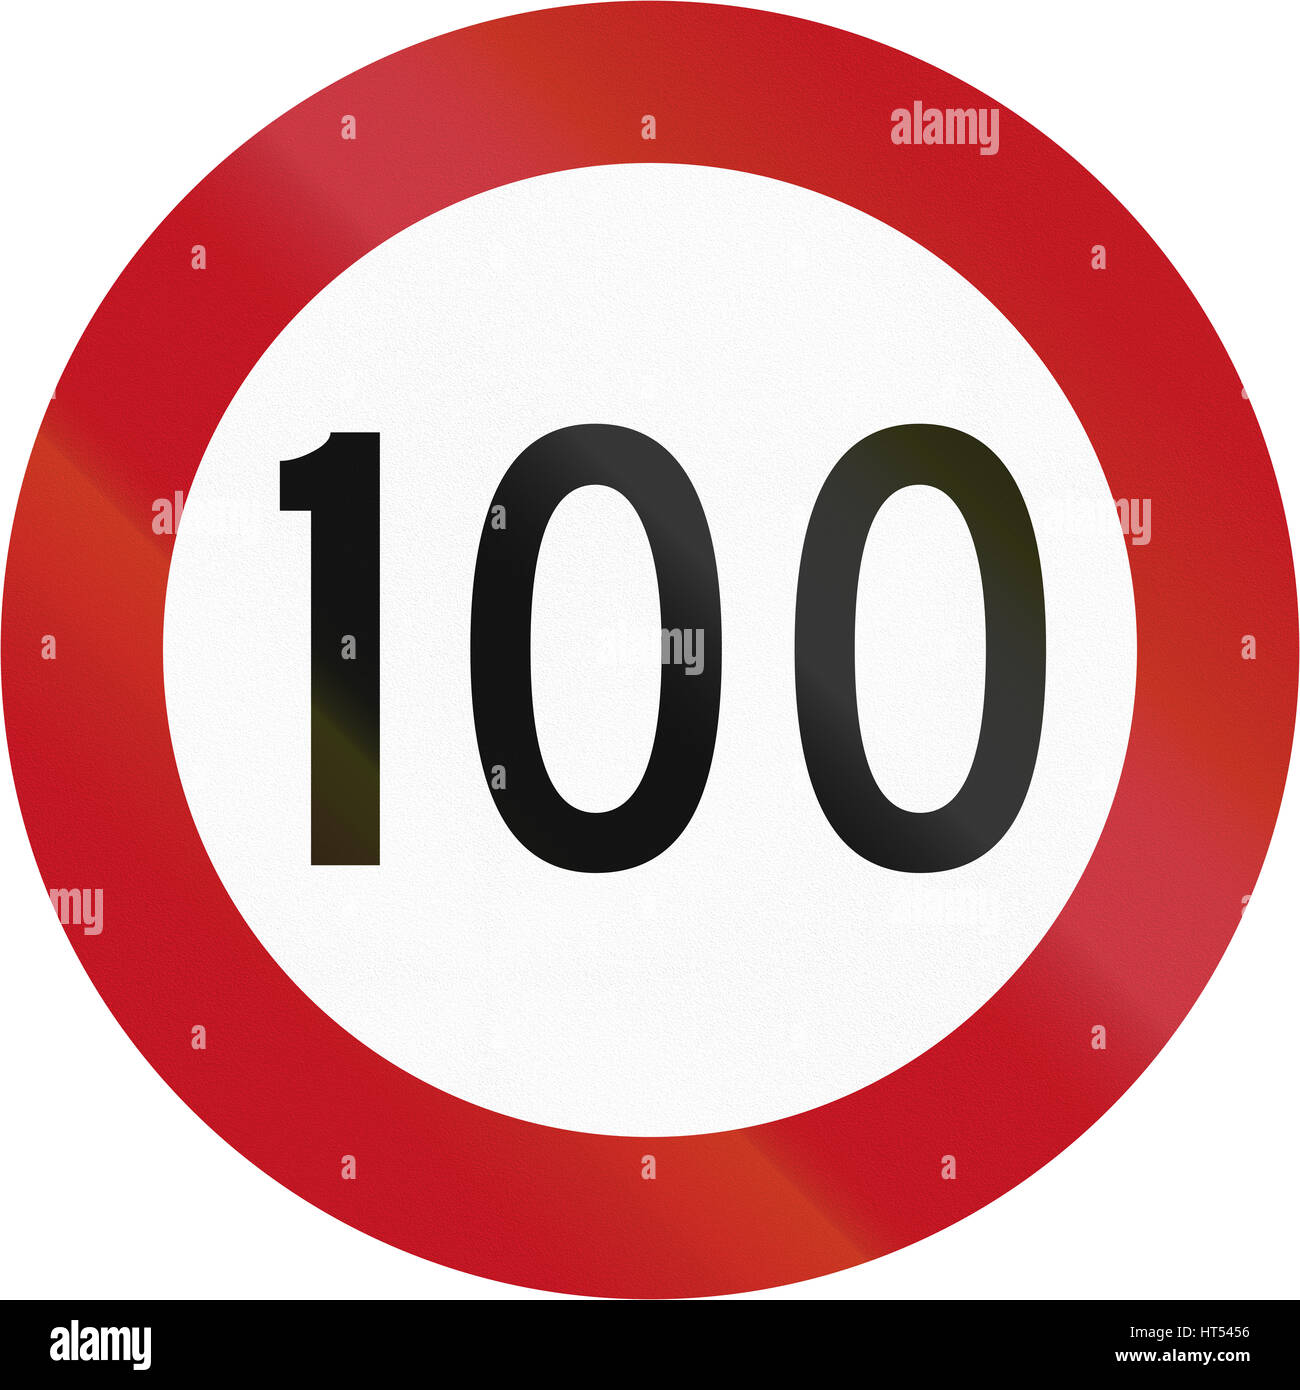 New Zealand Straßenschild RG-2 - 100 Kmh Grenze. Dies ist die gesetzliche Höchstgeschwindigkeit für Kraftfahrzeuge in Neuseeland. Stockfoto